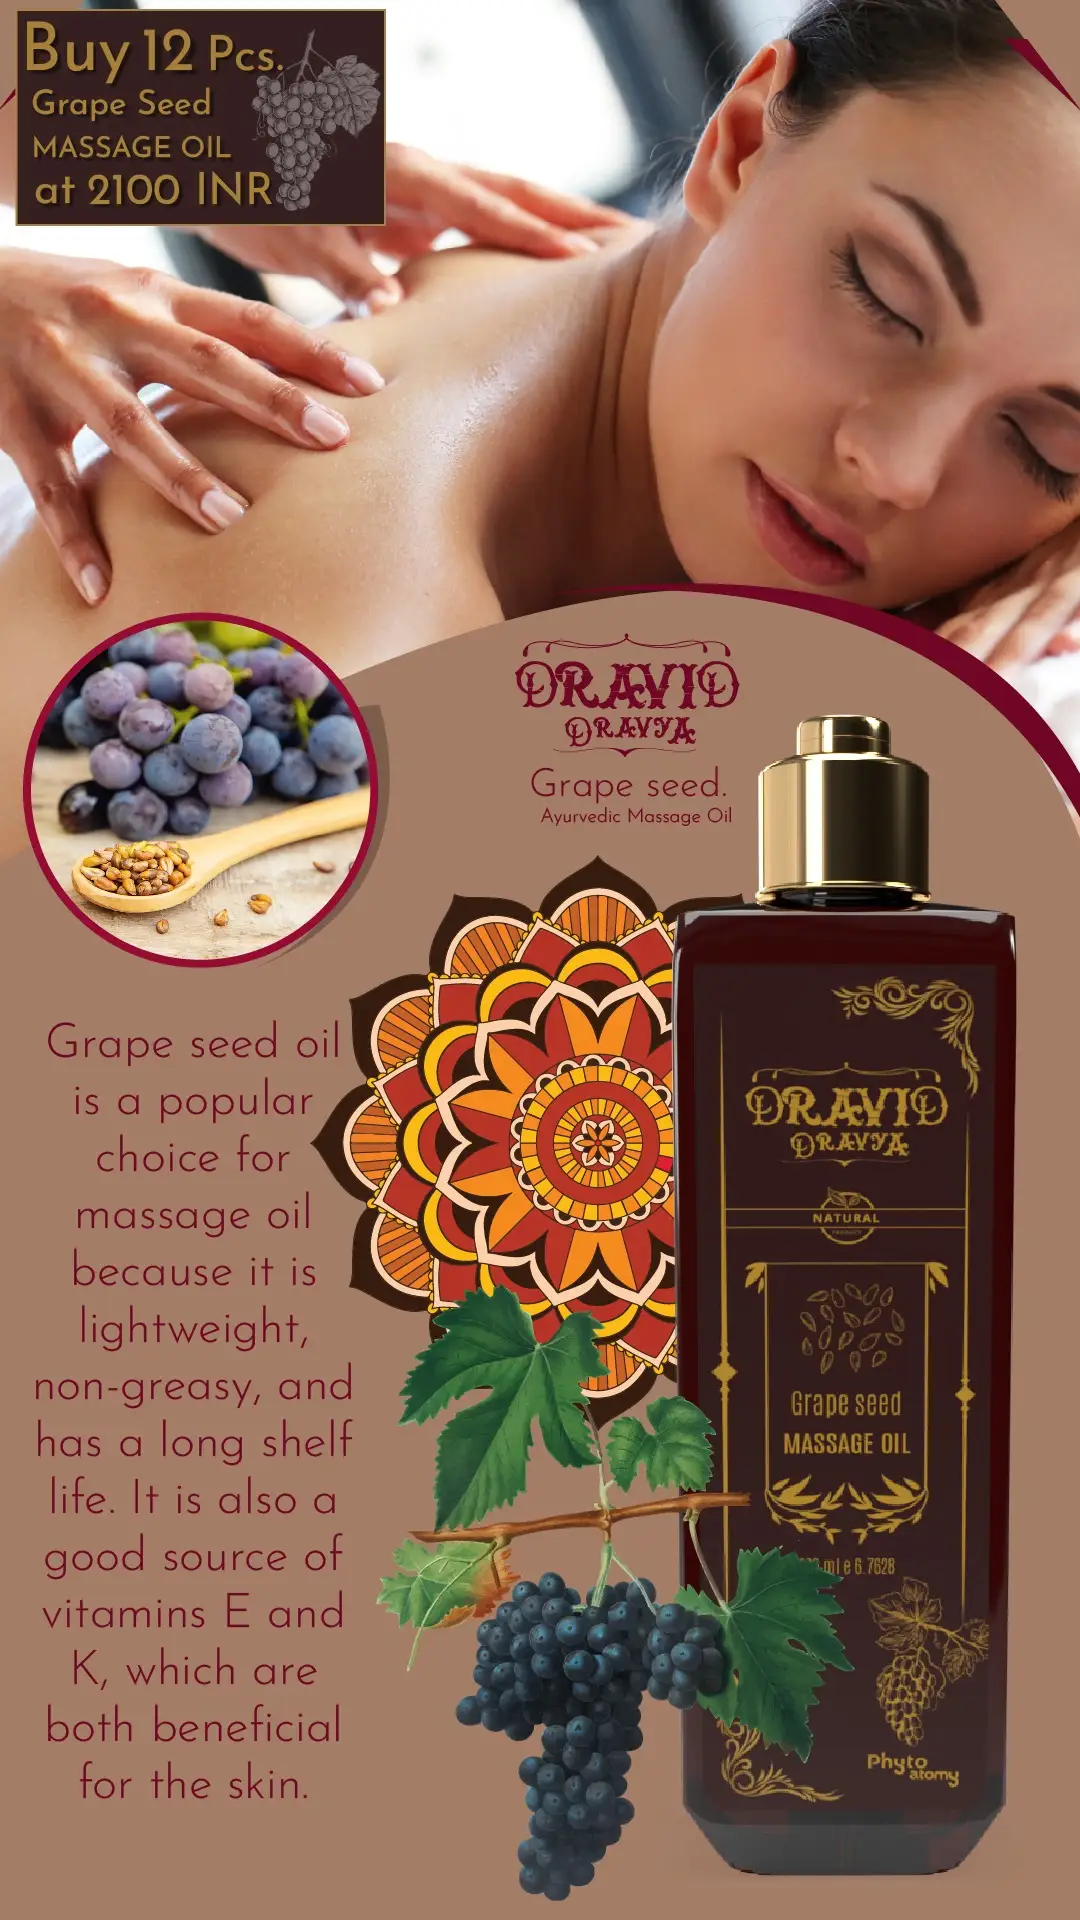 RBV B2B Grape Seed  Massage Oil (200 ml)-12 Pcs.